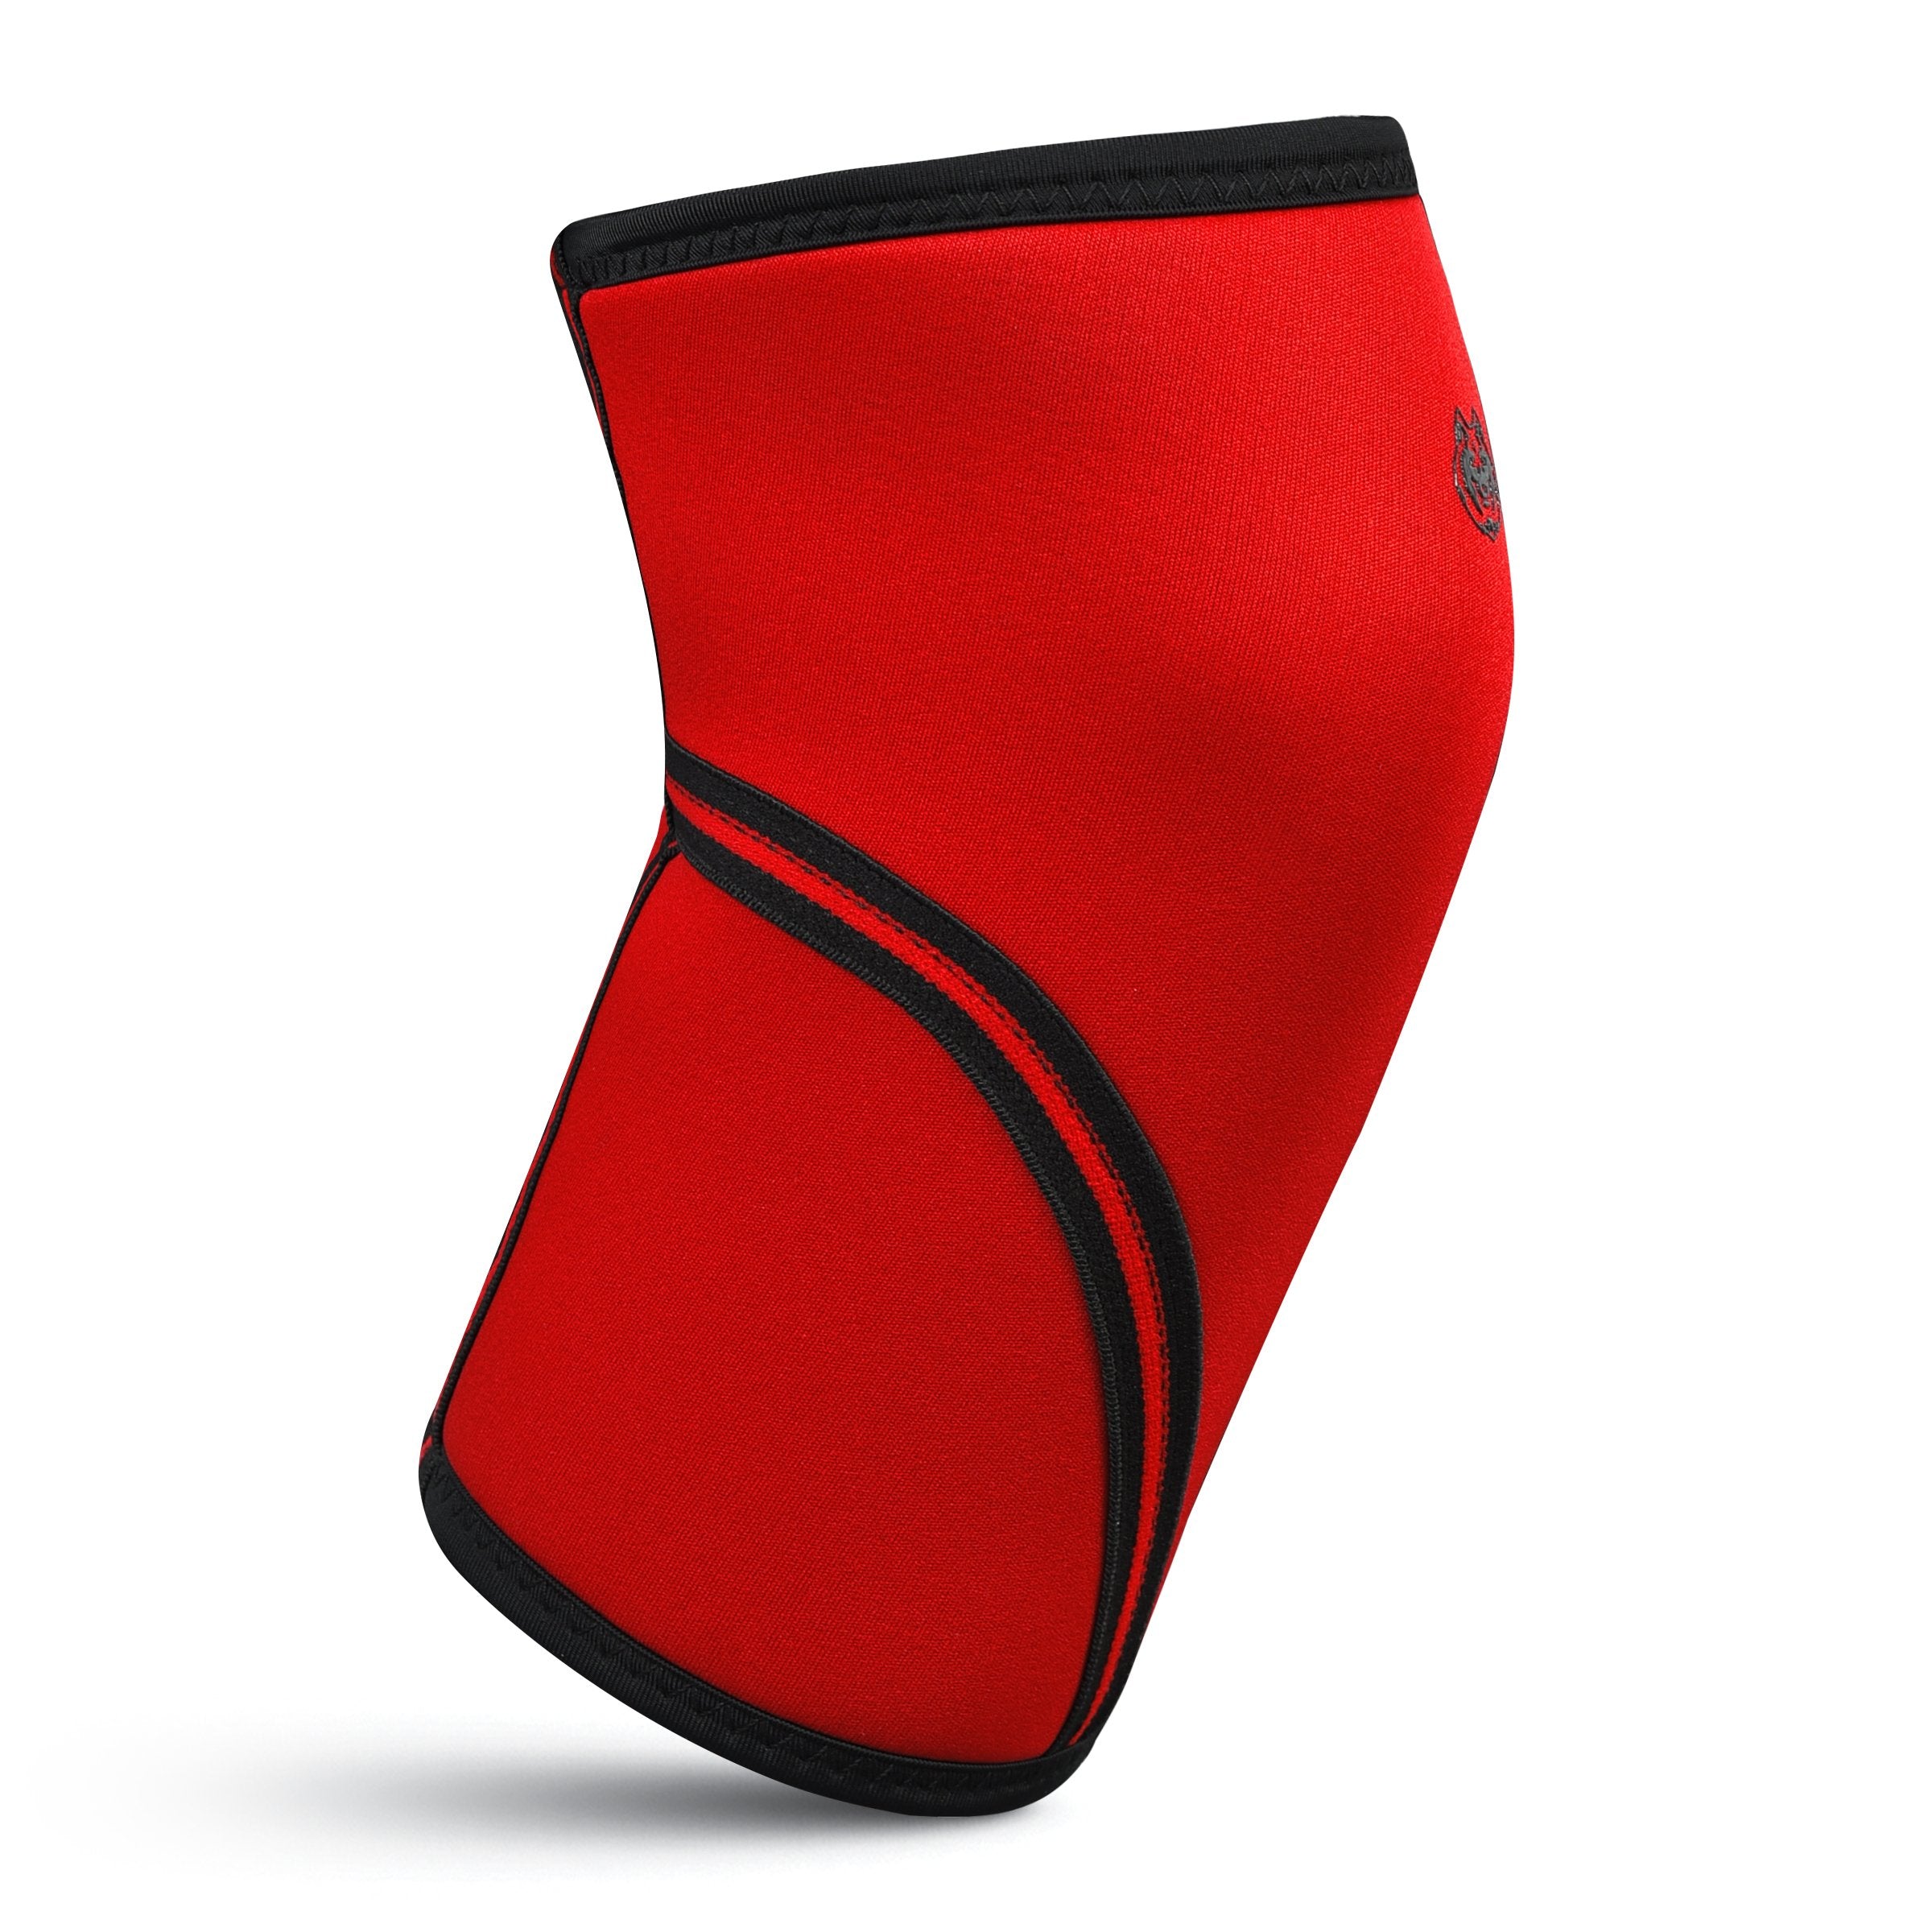 FITNESSFOX 7MM NEOPRENE Knee Sleeves Red/Black